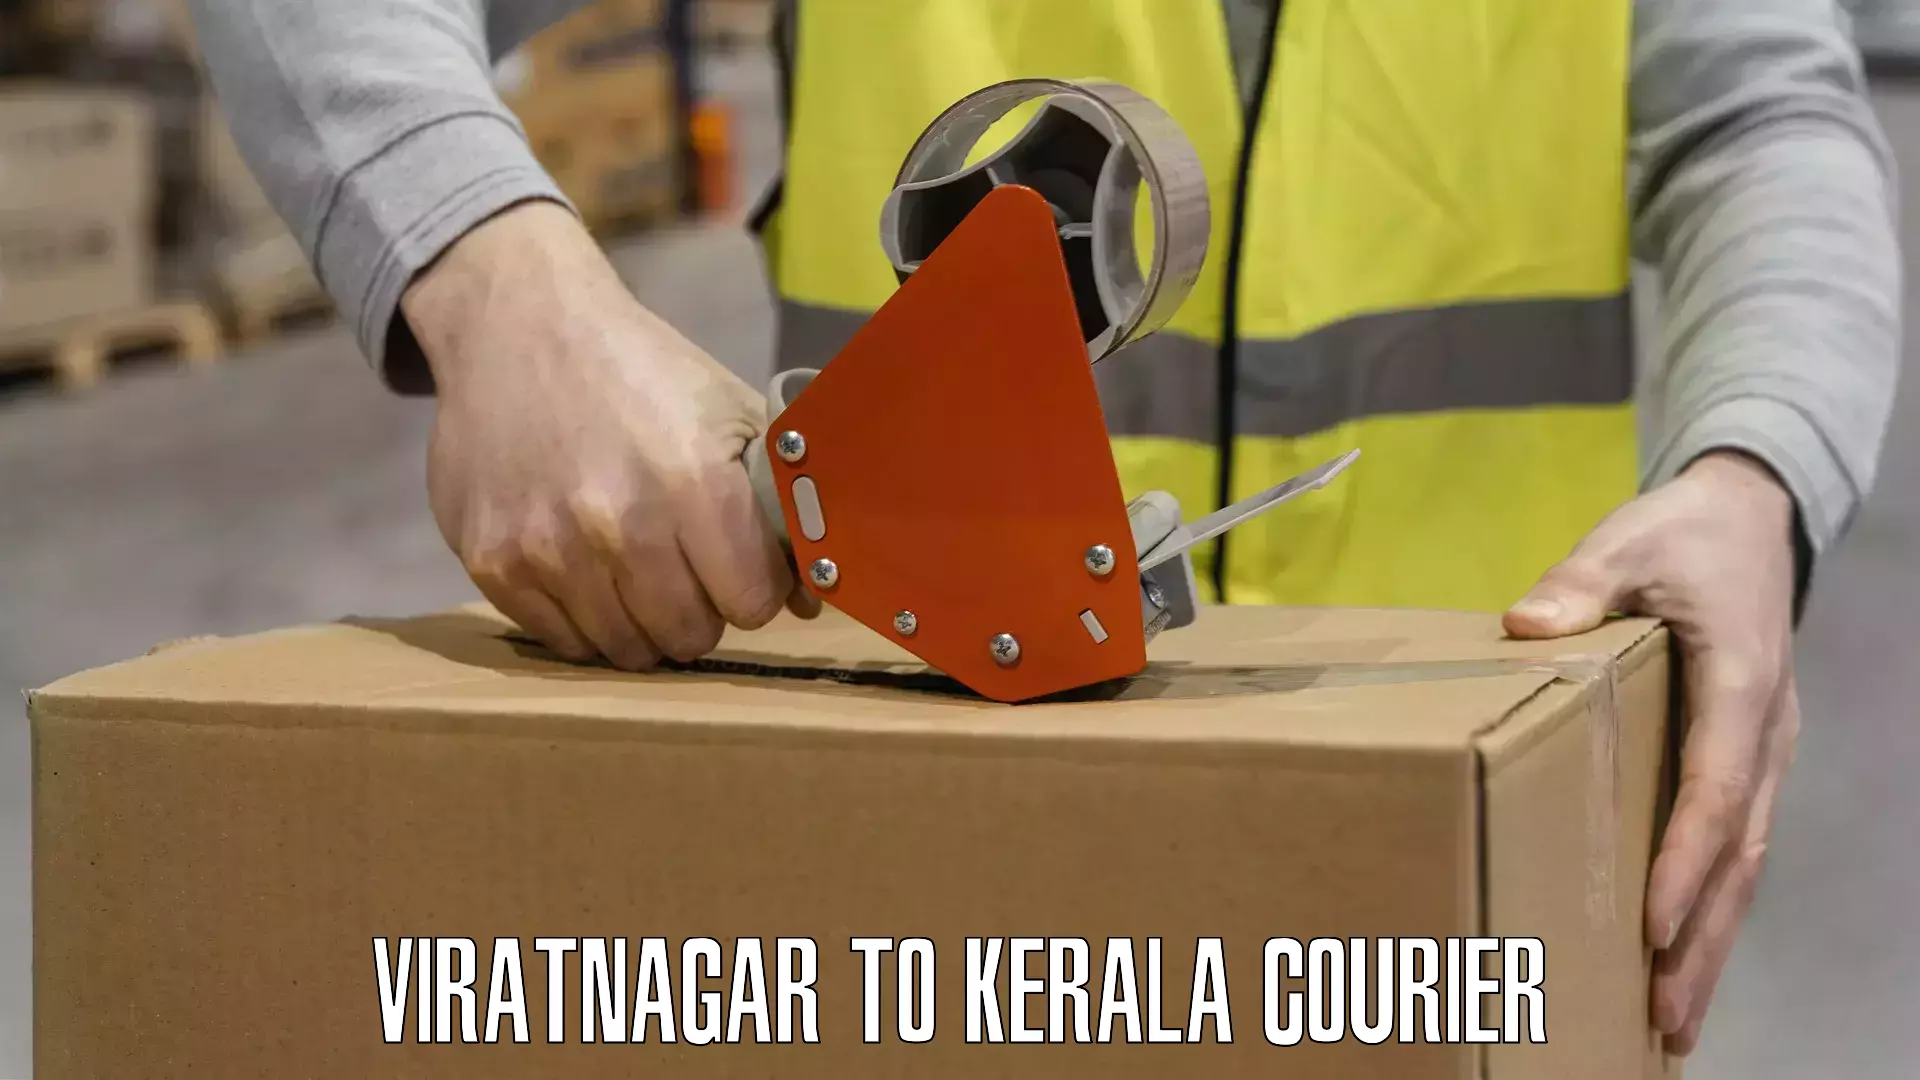 International courier networks Viratnagar to Karunagappally